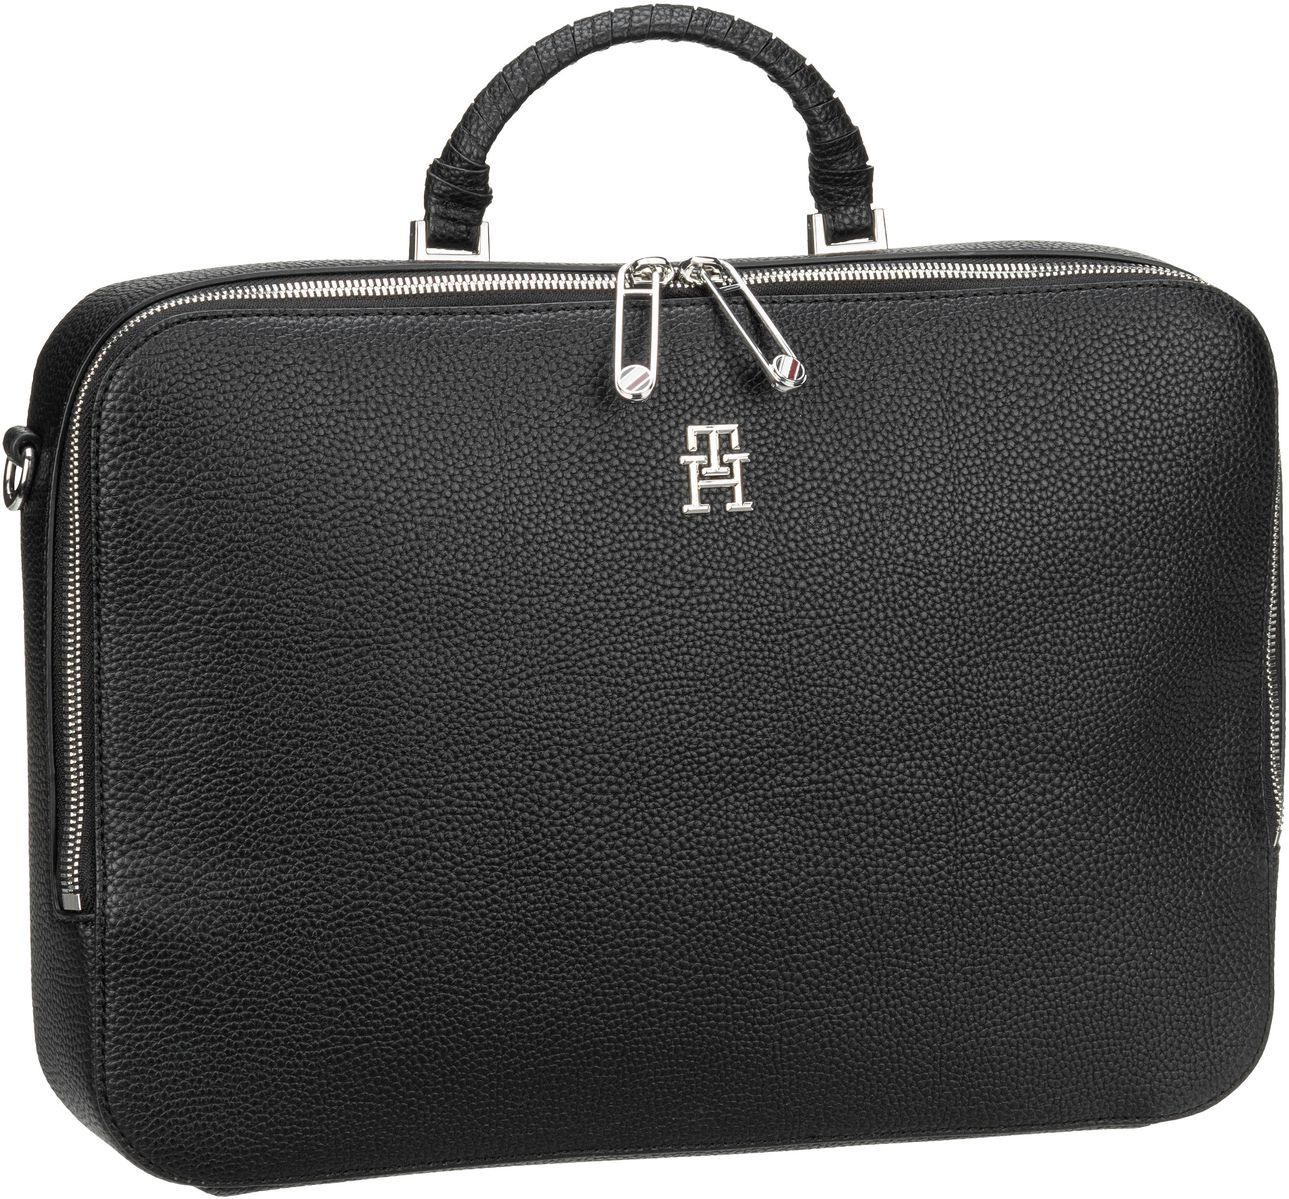 Tommy Hilfiger Aktentasche TH Emblem Laptop Bag PF23 Black (6.6 Liter)  - Onlineshop Taschenkaufhaus